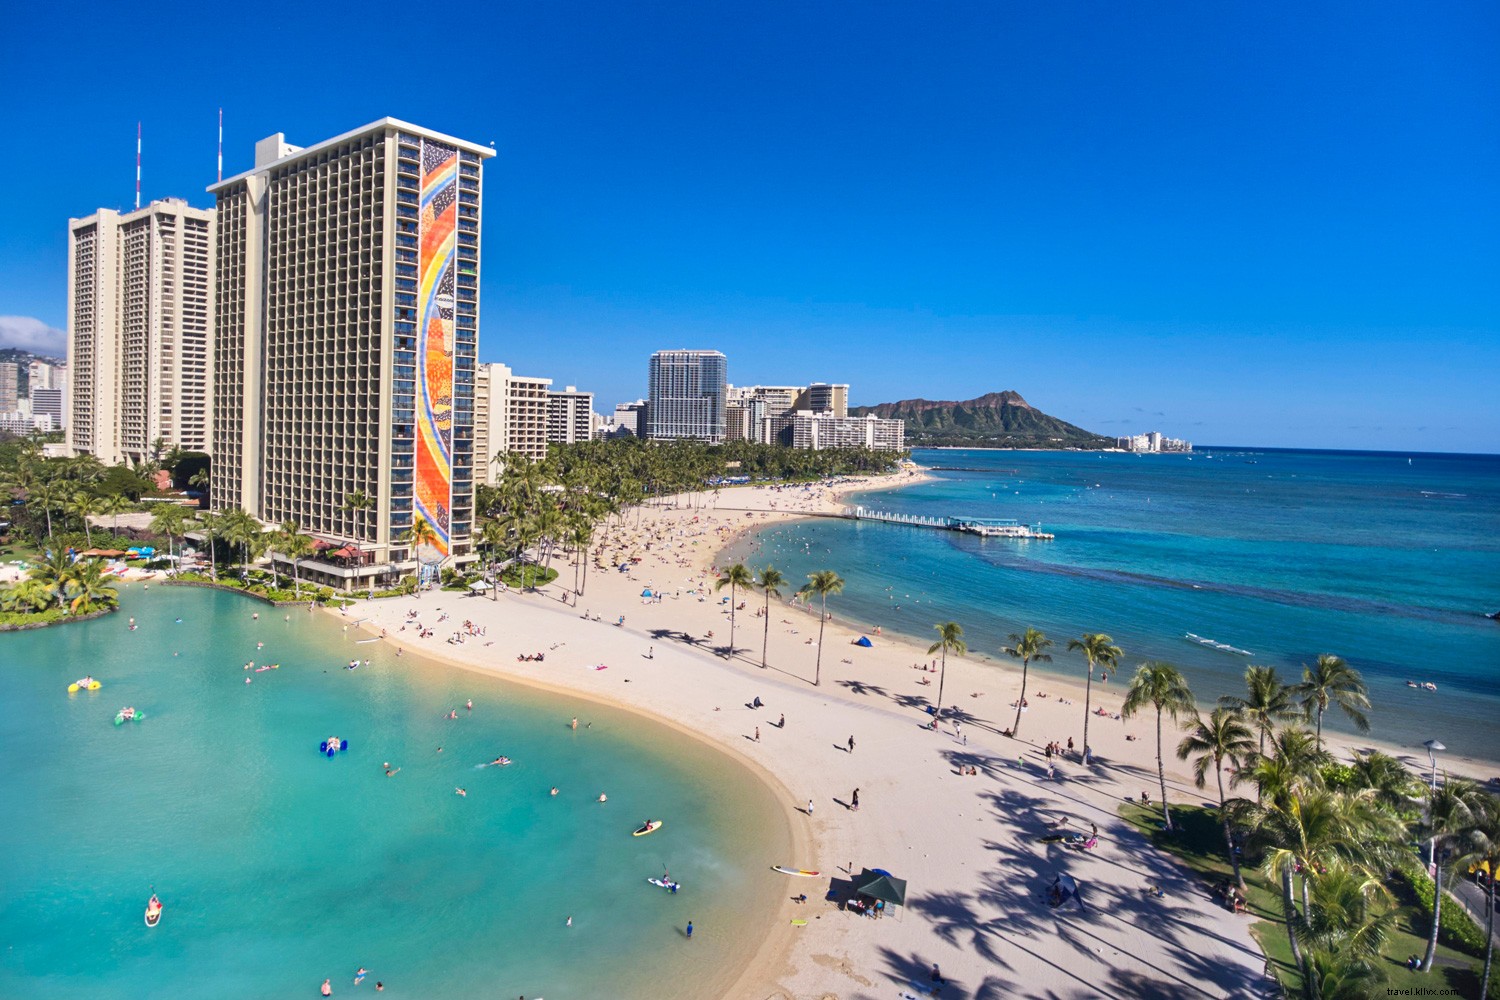 Hawaï :trouver le bon coin de paradis pour votre personnalité 